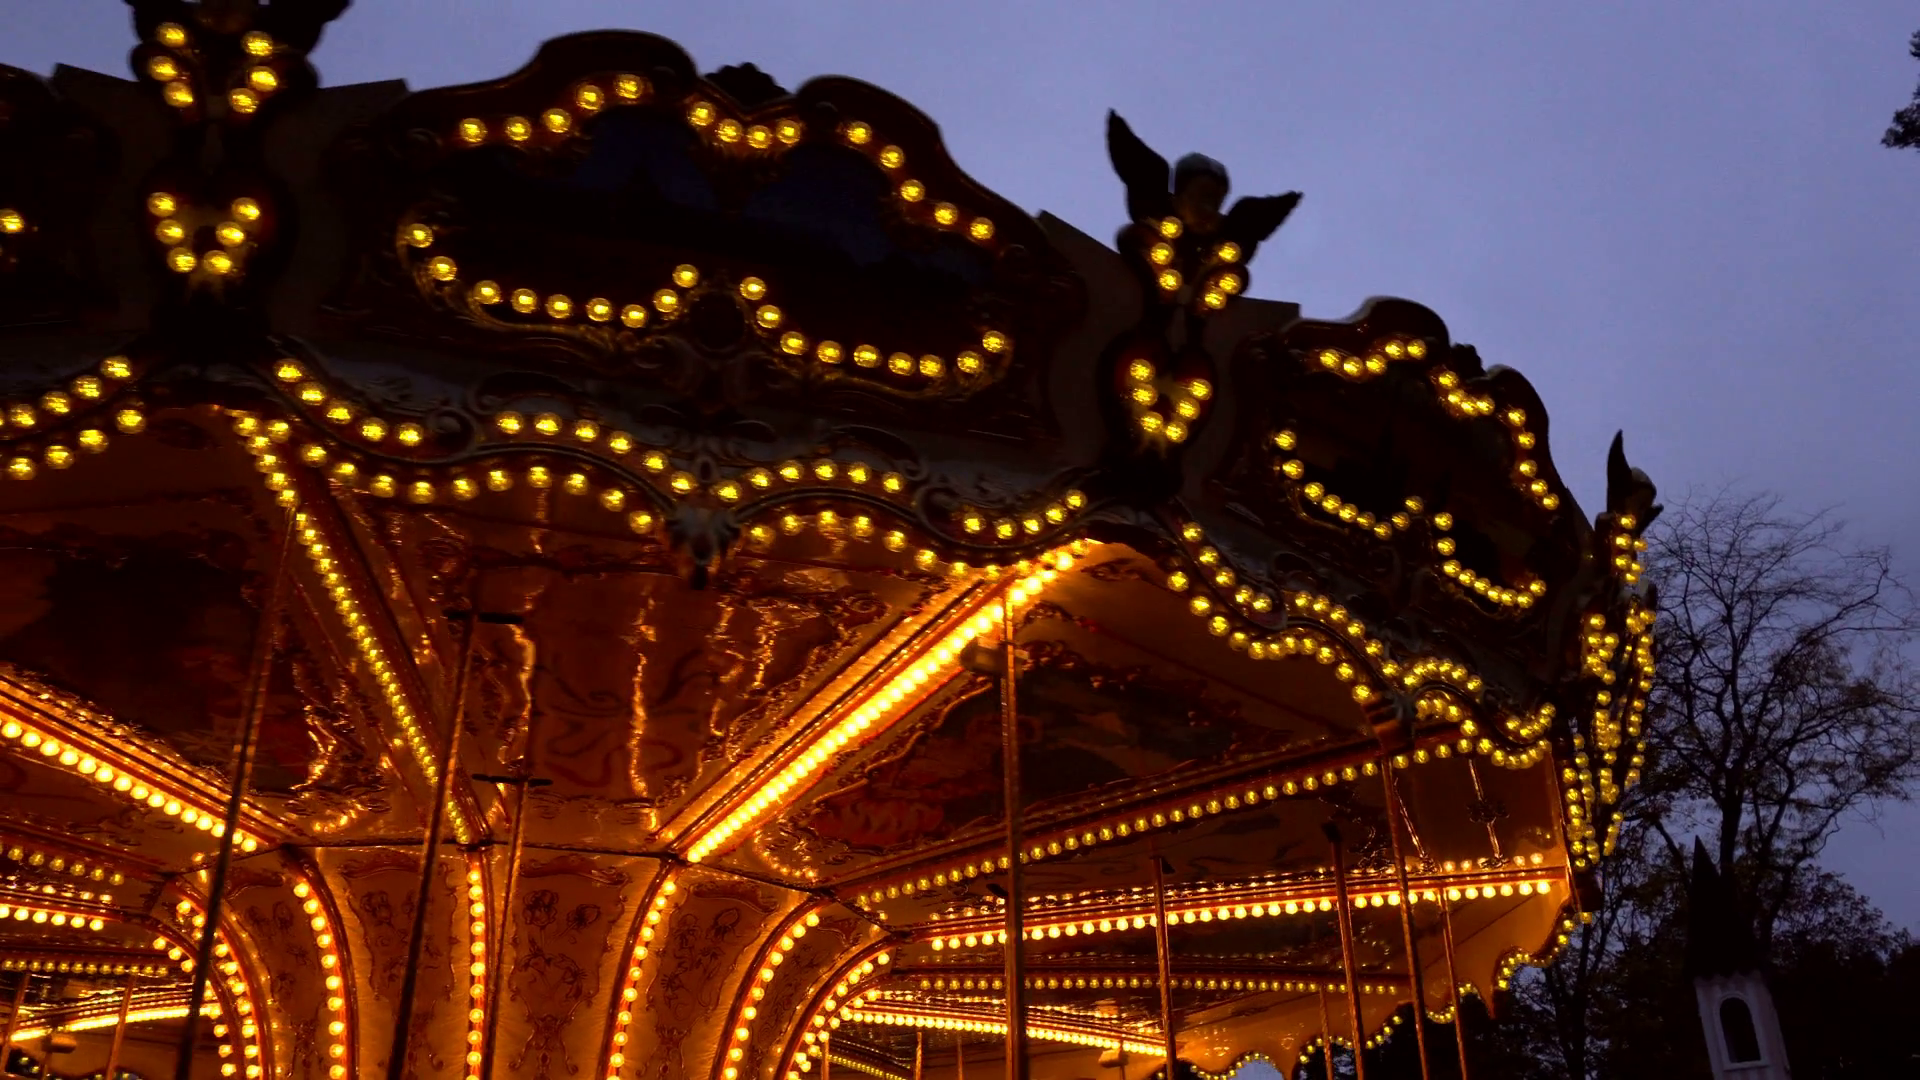 Illuminated retro carousel at night Stock Video Footage - VideoBlocks